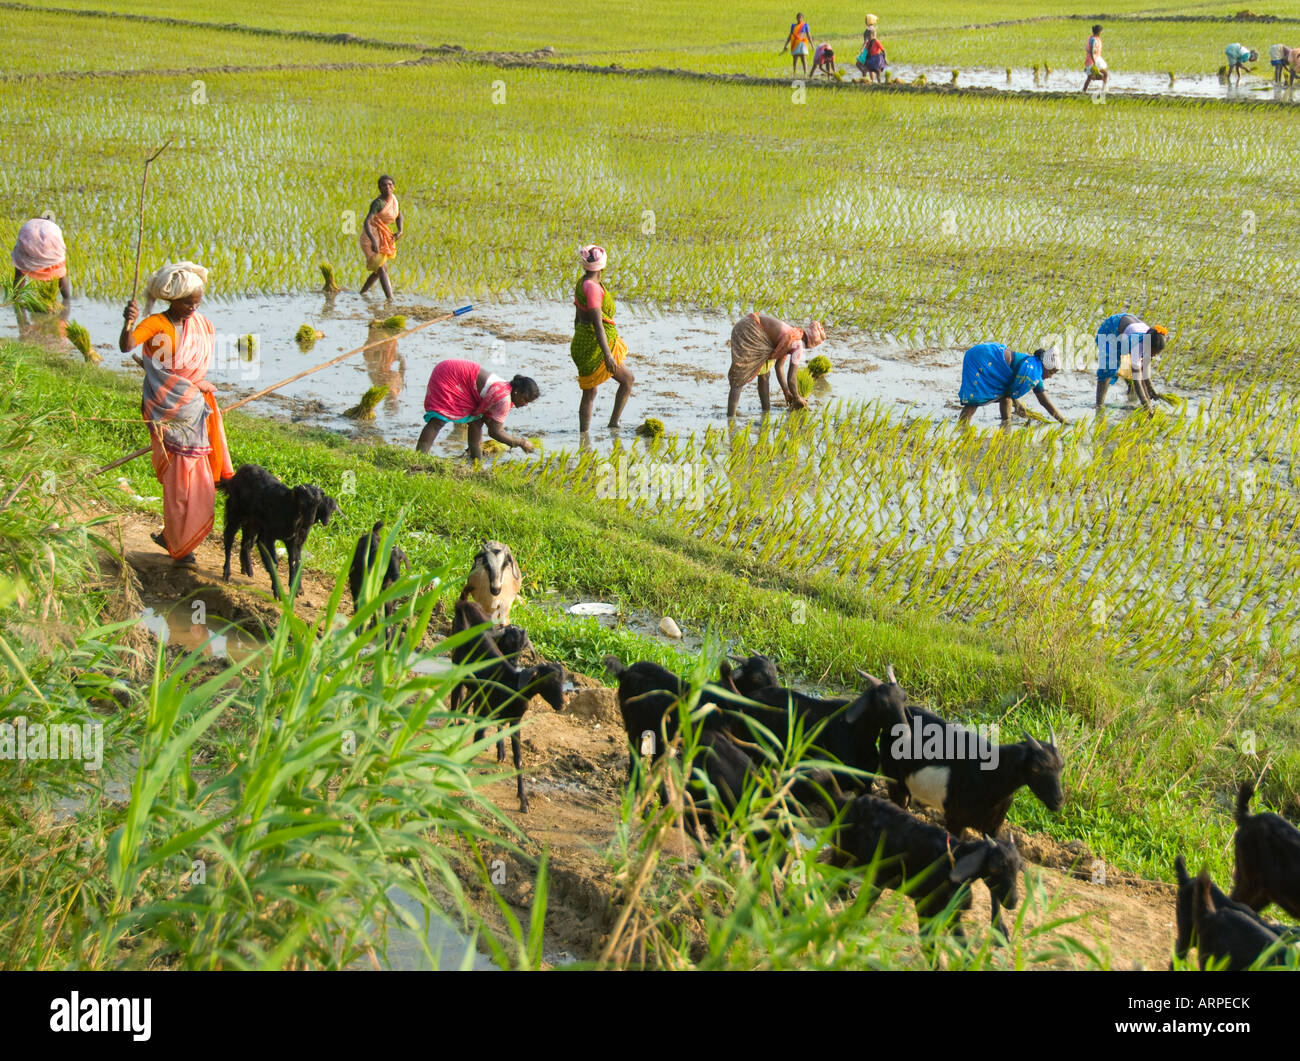 Una escena rural en el sur de la India con mujeres plantando arroz en un campo de arroz y un pastor de cabras de pastoreo Foto de stock